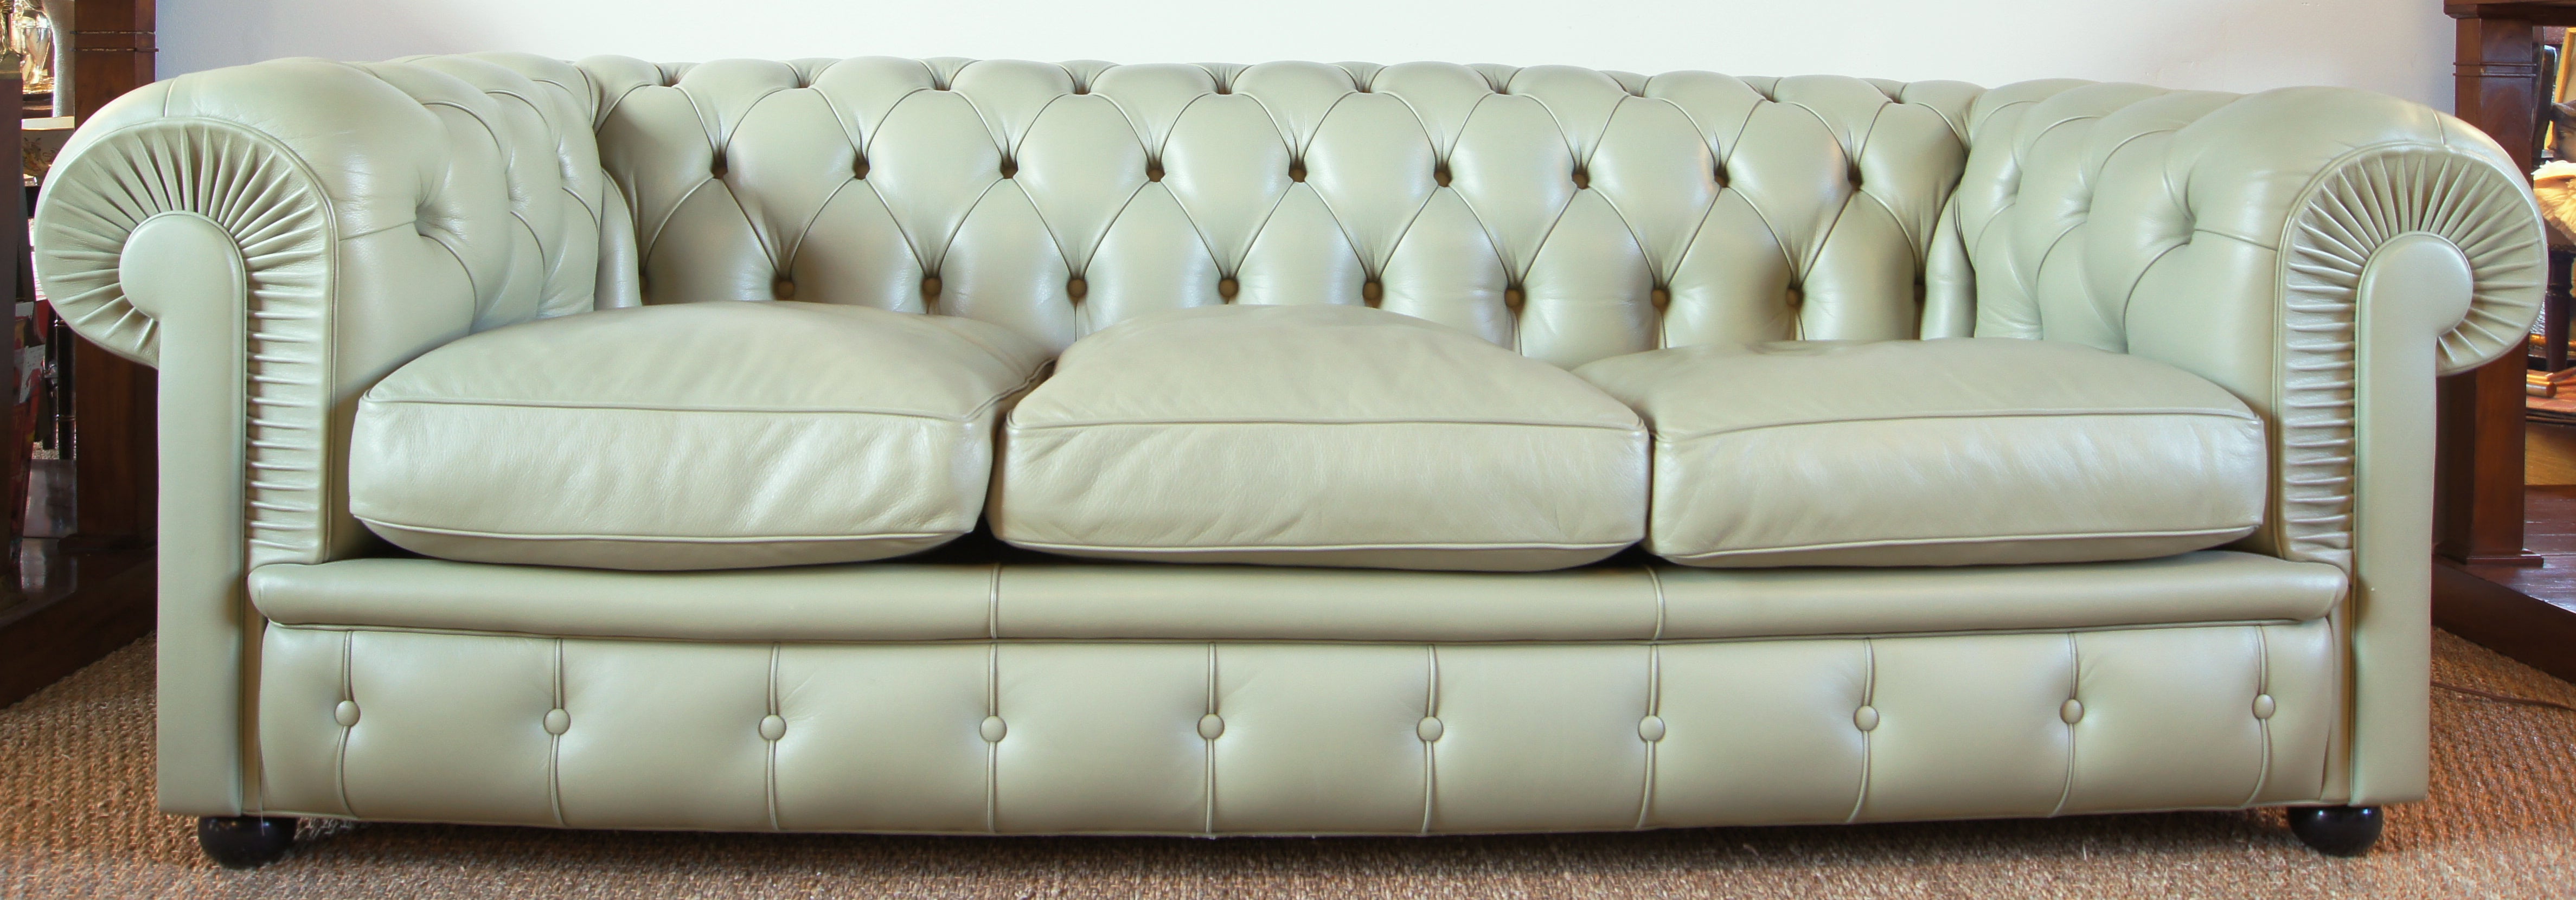 Chesterfield Style Sofa by Poltrona Frau